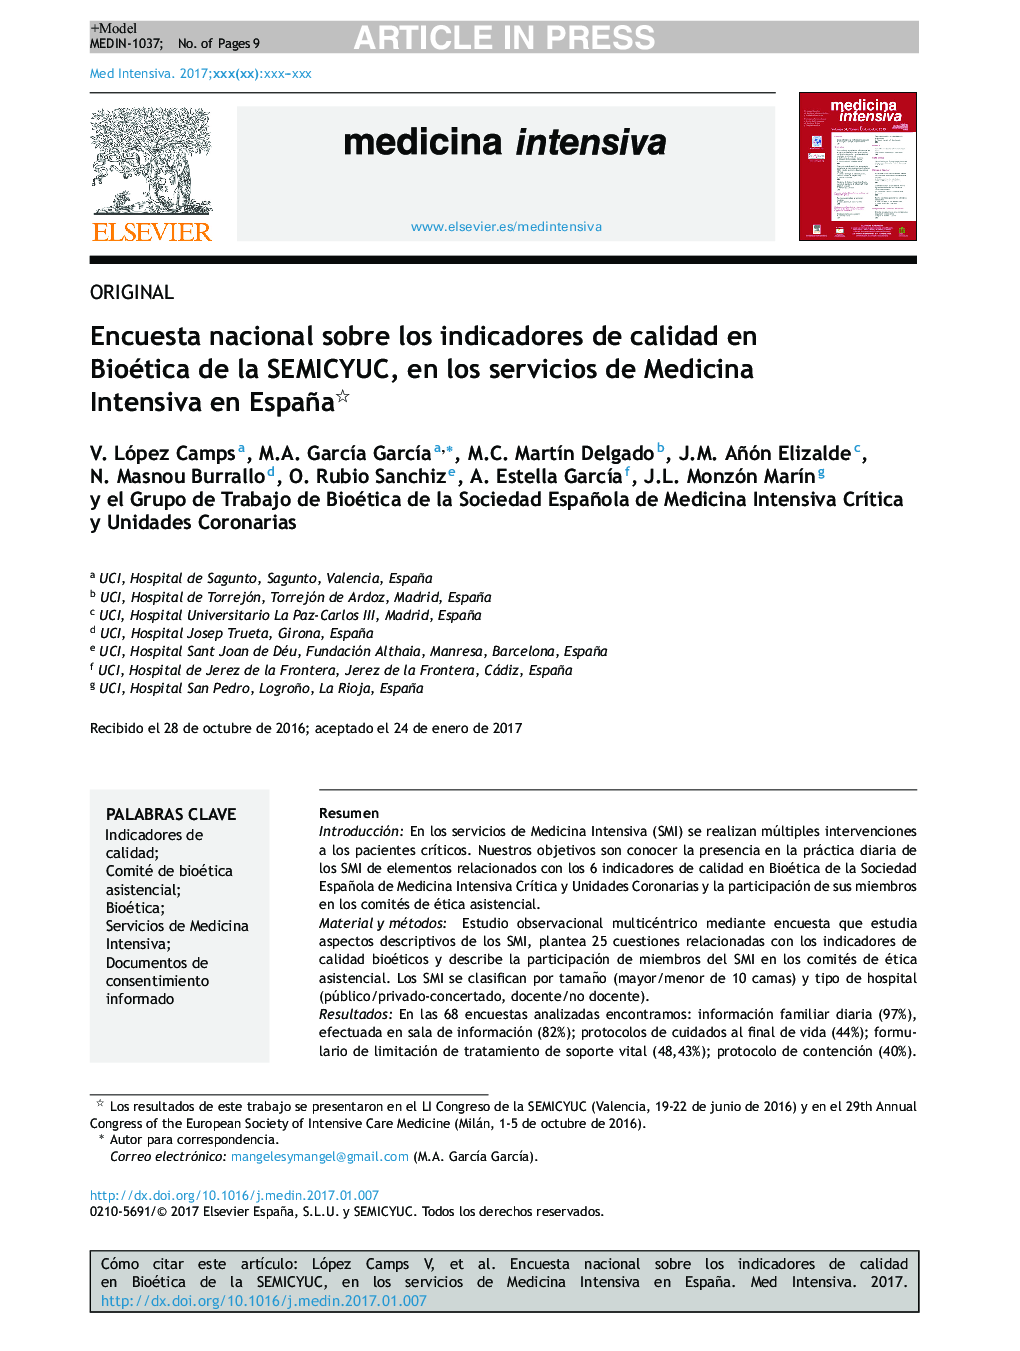 Encuesta nacional sobre los indicadores de calidad en Bioética de la SEMICYUC, en los servicios de Medicina Intensiva en España